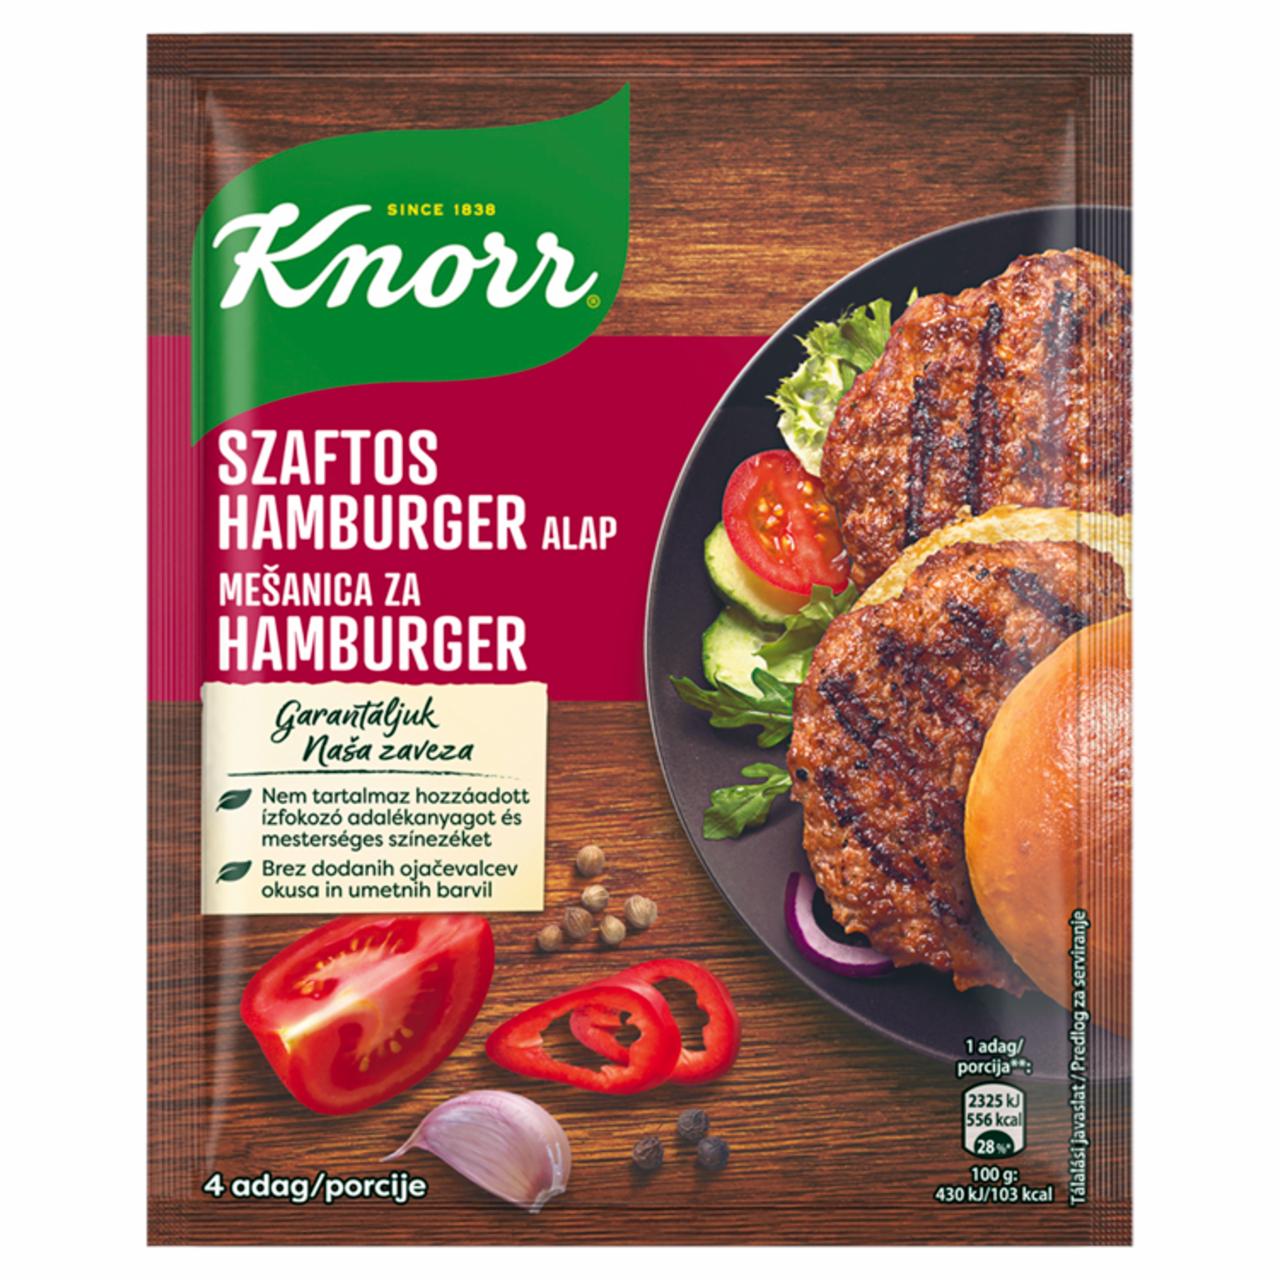 Képek - Knorr szaftos hamburger alap 70 g